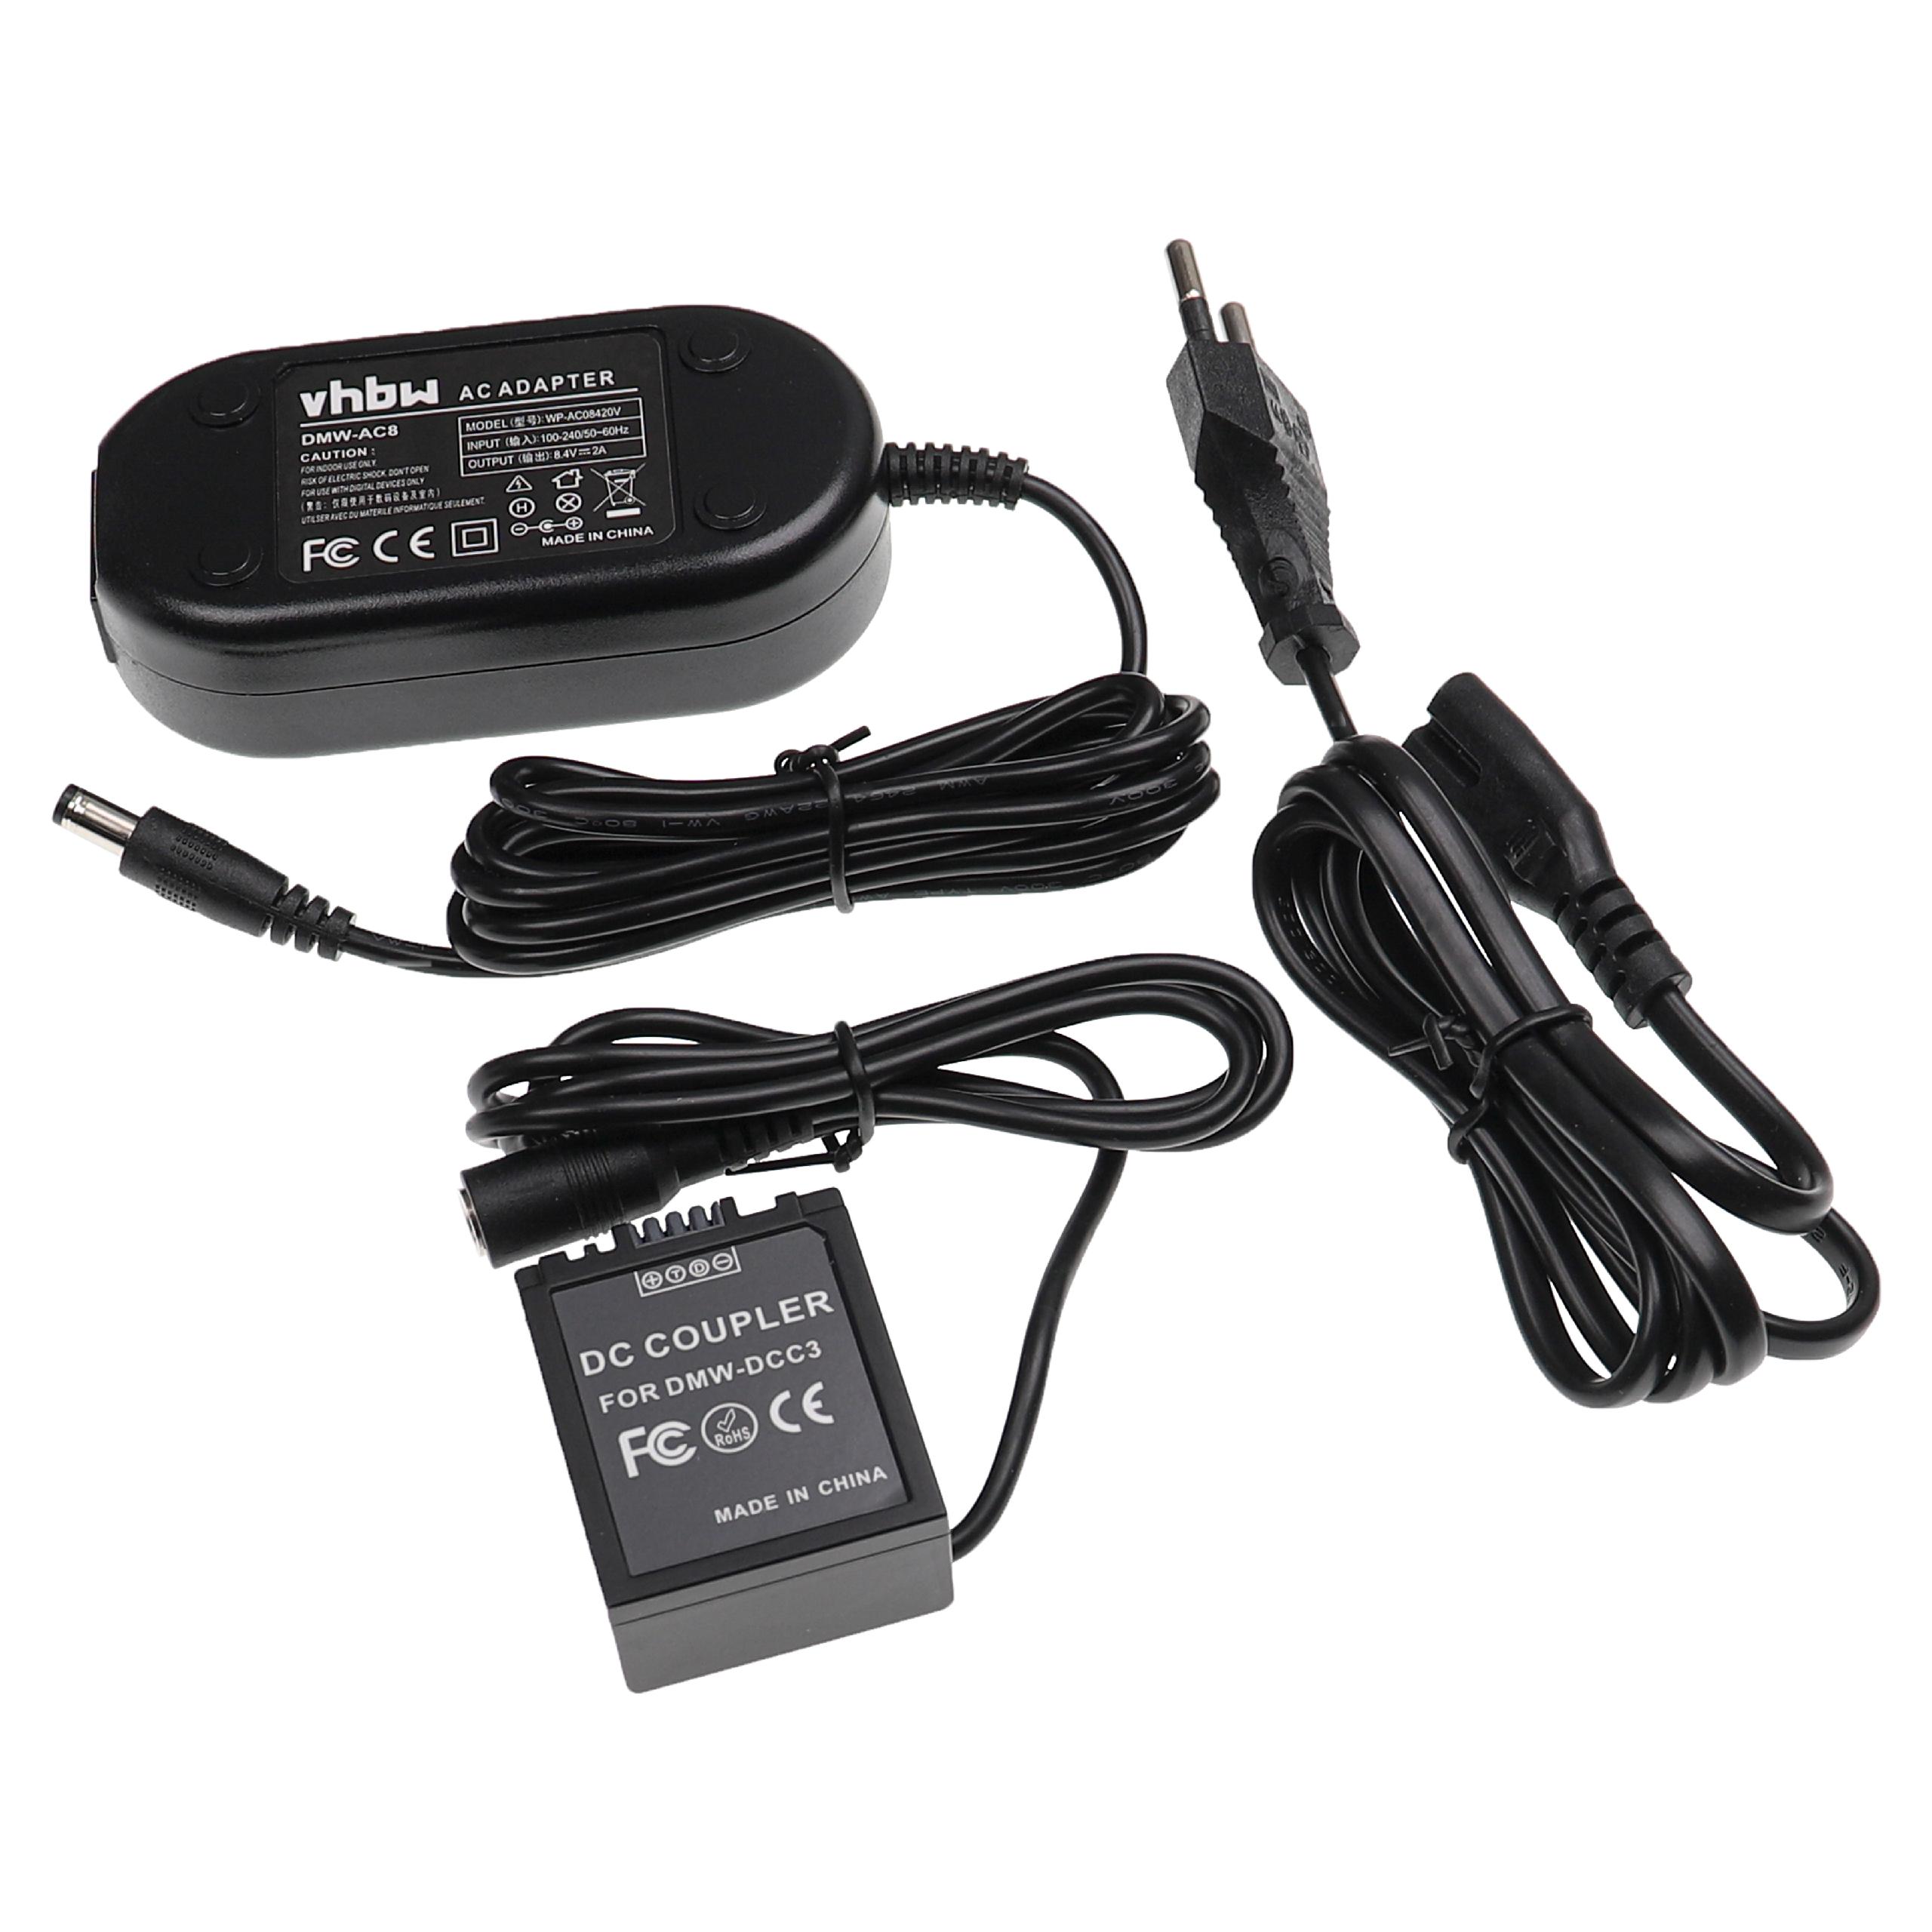 Zasilacz do aparatu zam. DMW-AC8 + adapter zam. Panasonic DMW-DCC3 - 2 m, 8,4 V 2,0 A